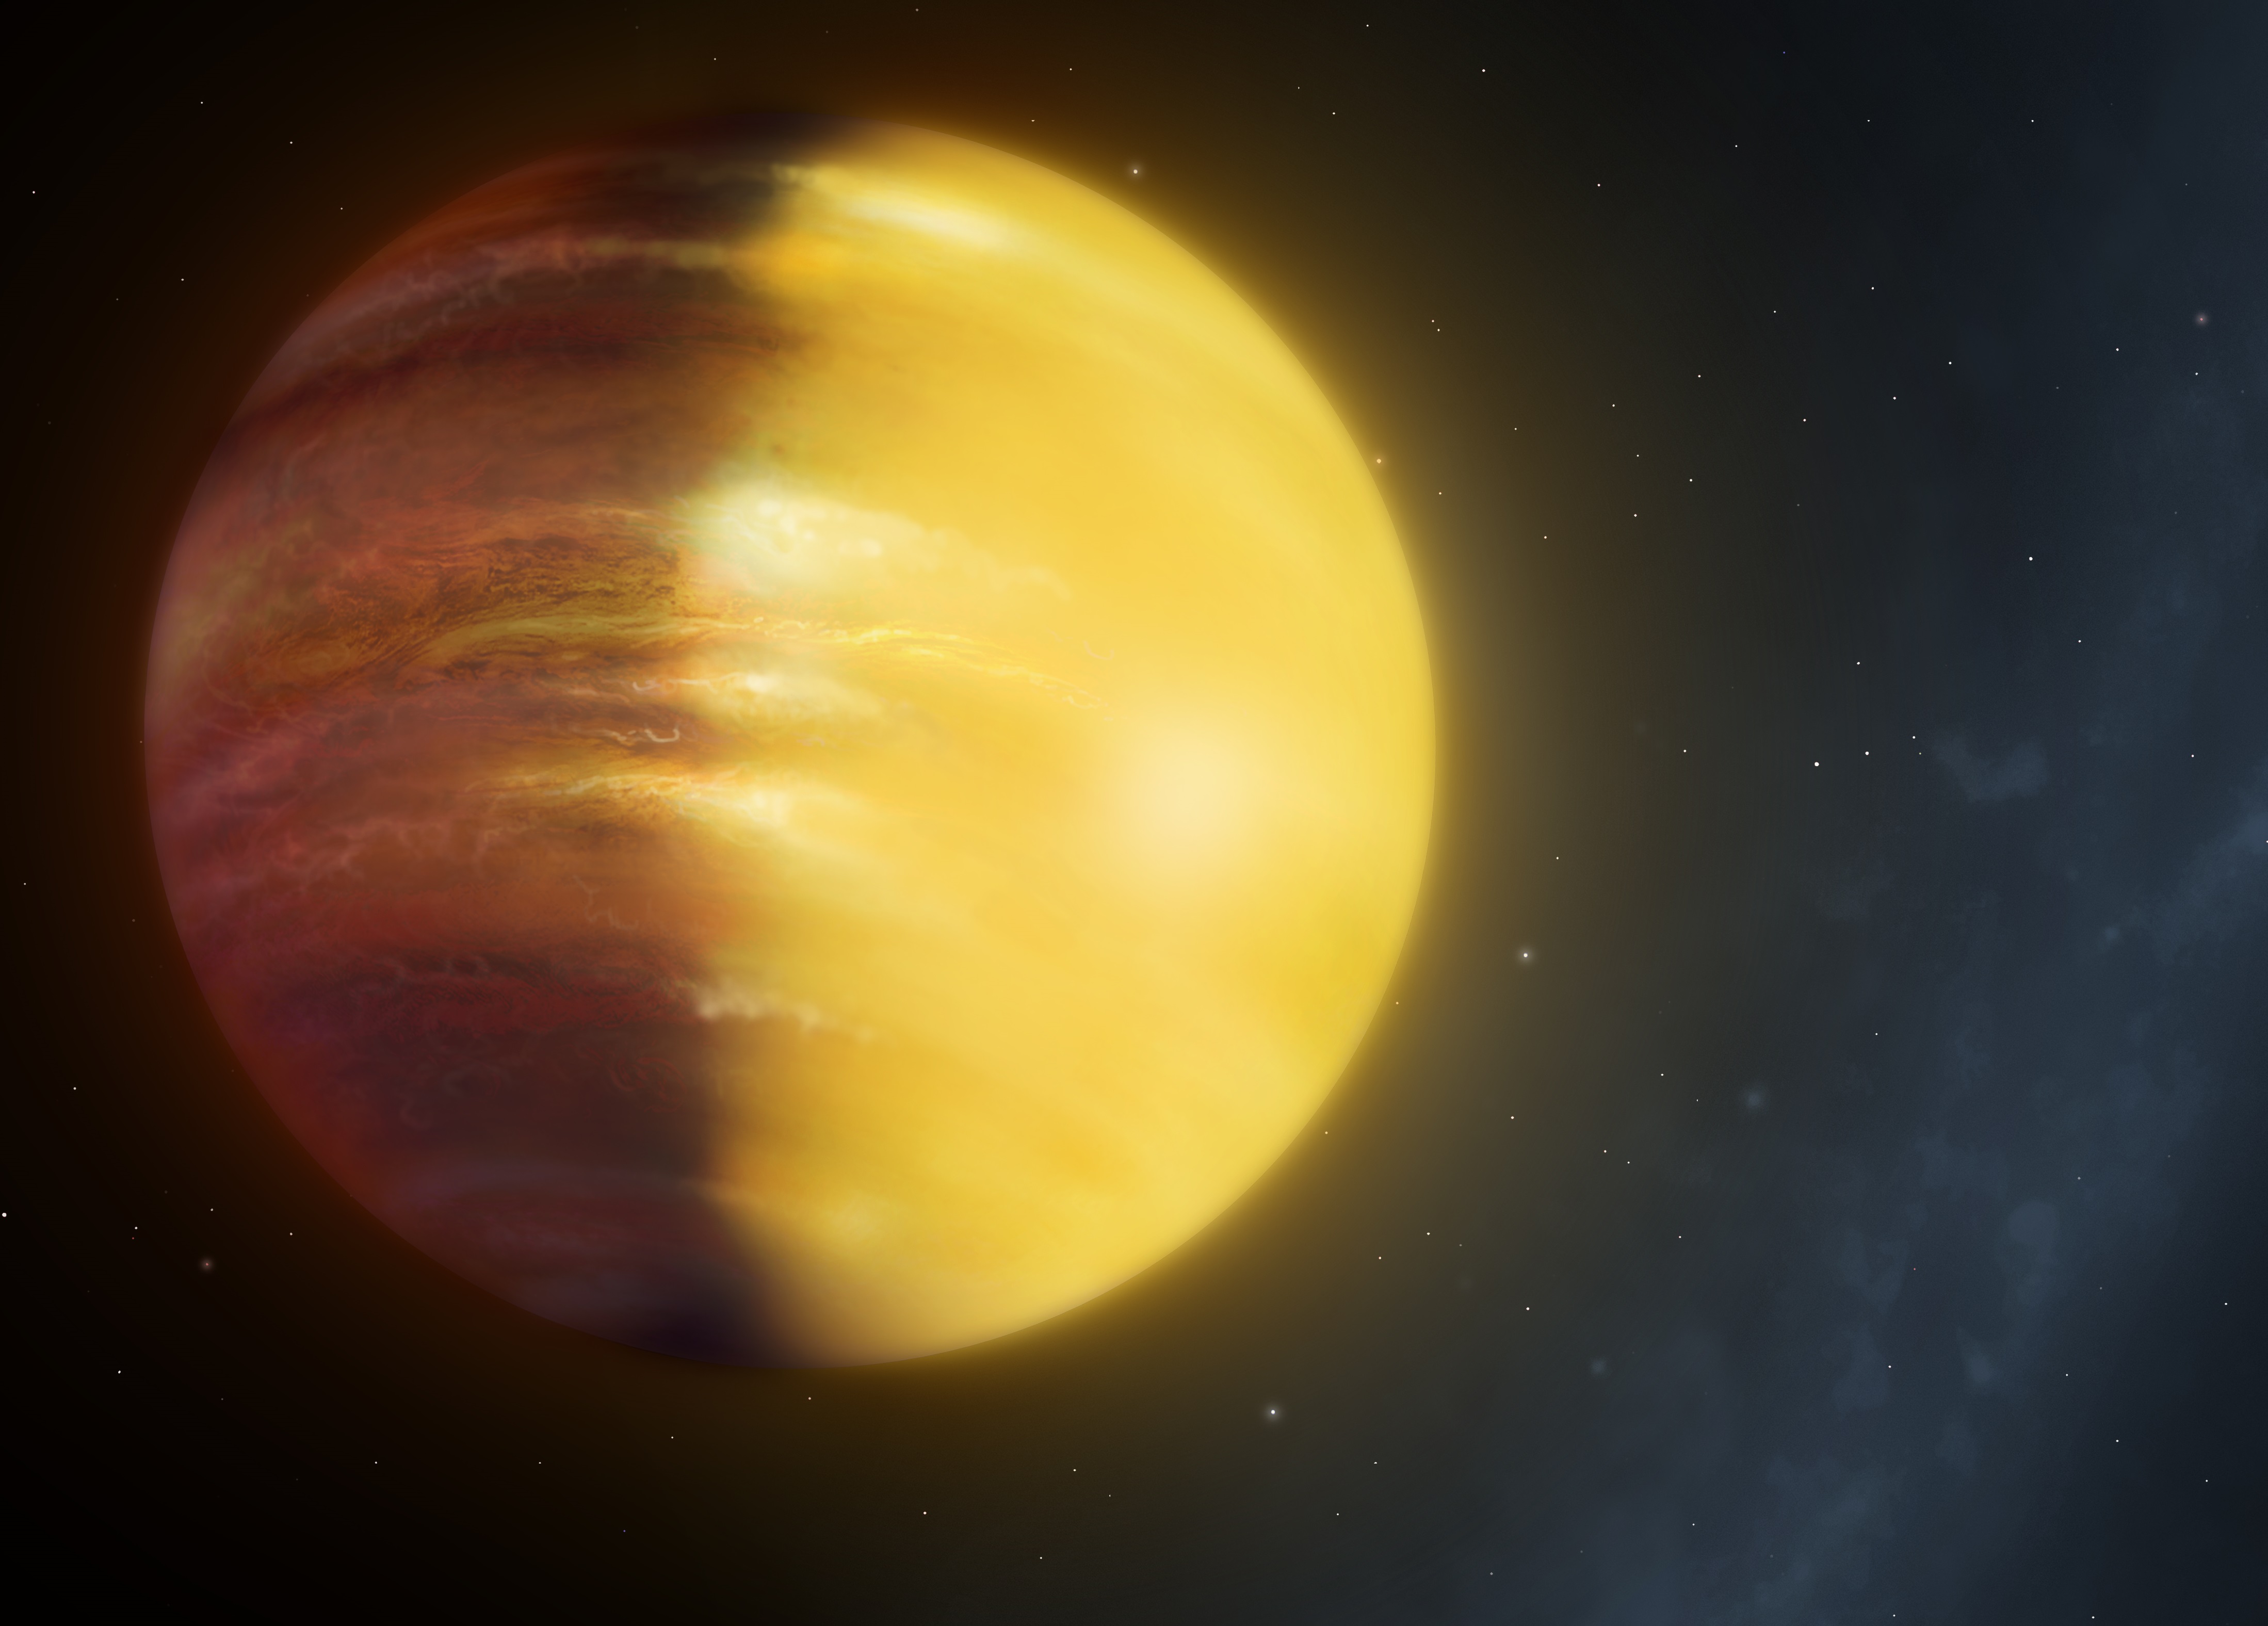 Hat p. Планета hat-p-7 b. Горячий Юпитер экзопланета. Экзопланеты гиганты. Зелёный газовый гигант.